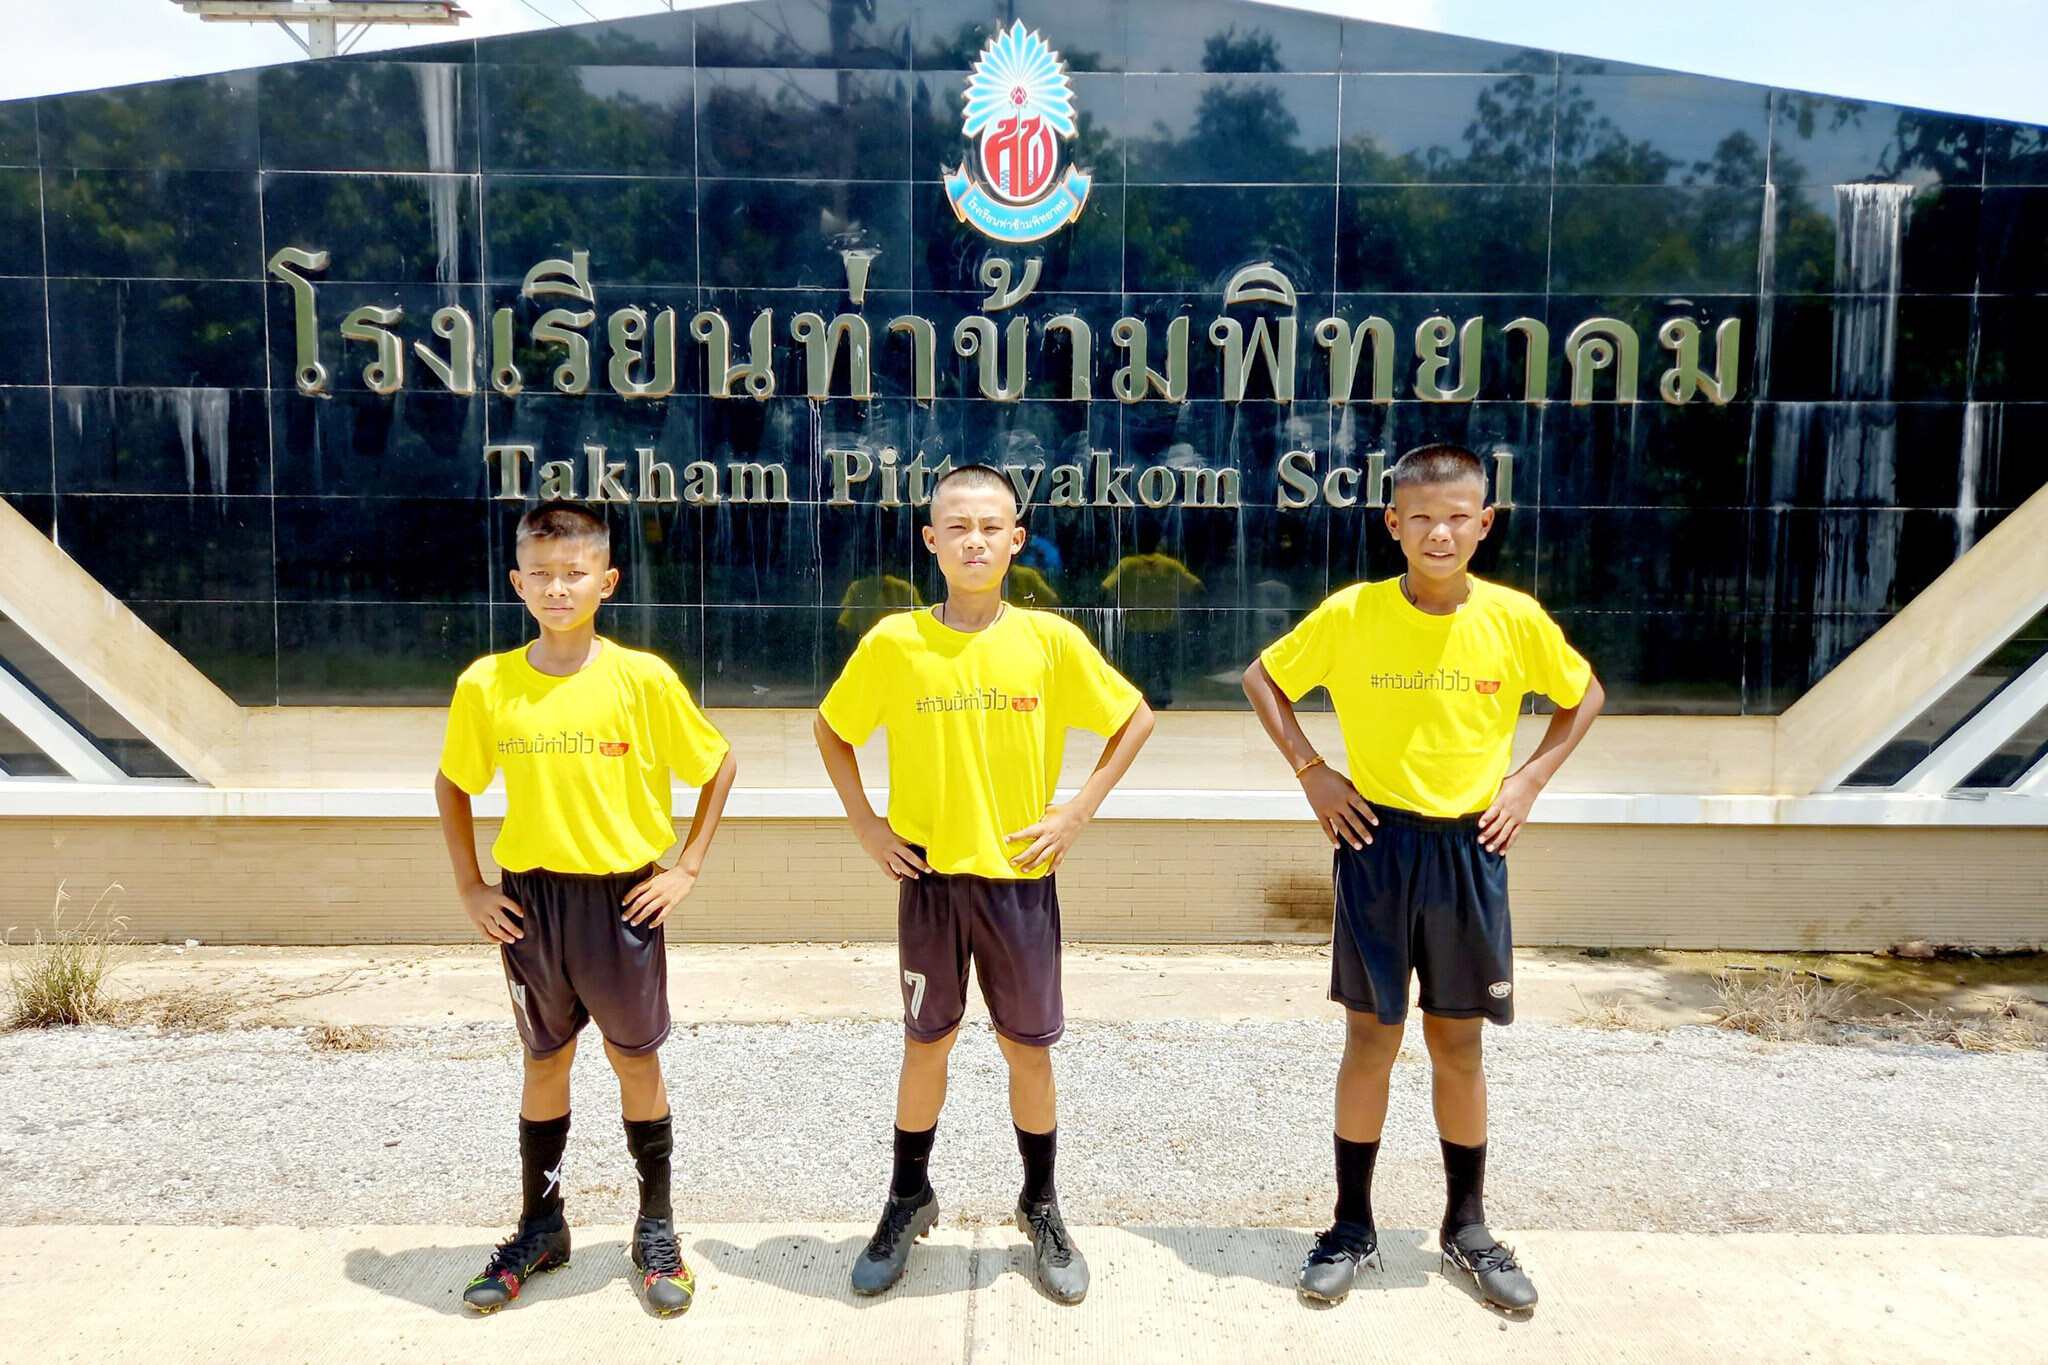 "ไวไวคิดส์ ฟุตบอลคลินิก" ป้อนฝันเด็กไทย ปูทางสู่นักฟุตบอลอาชีพ